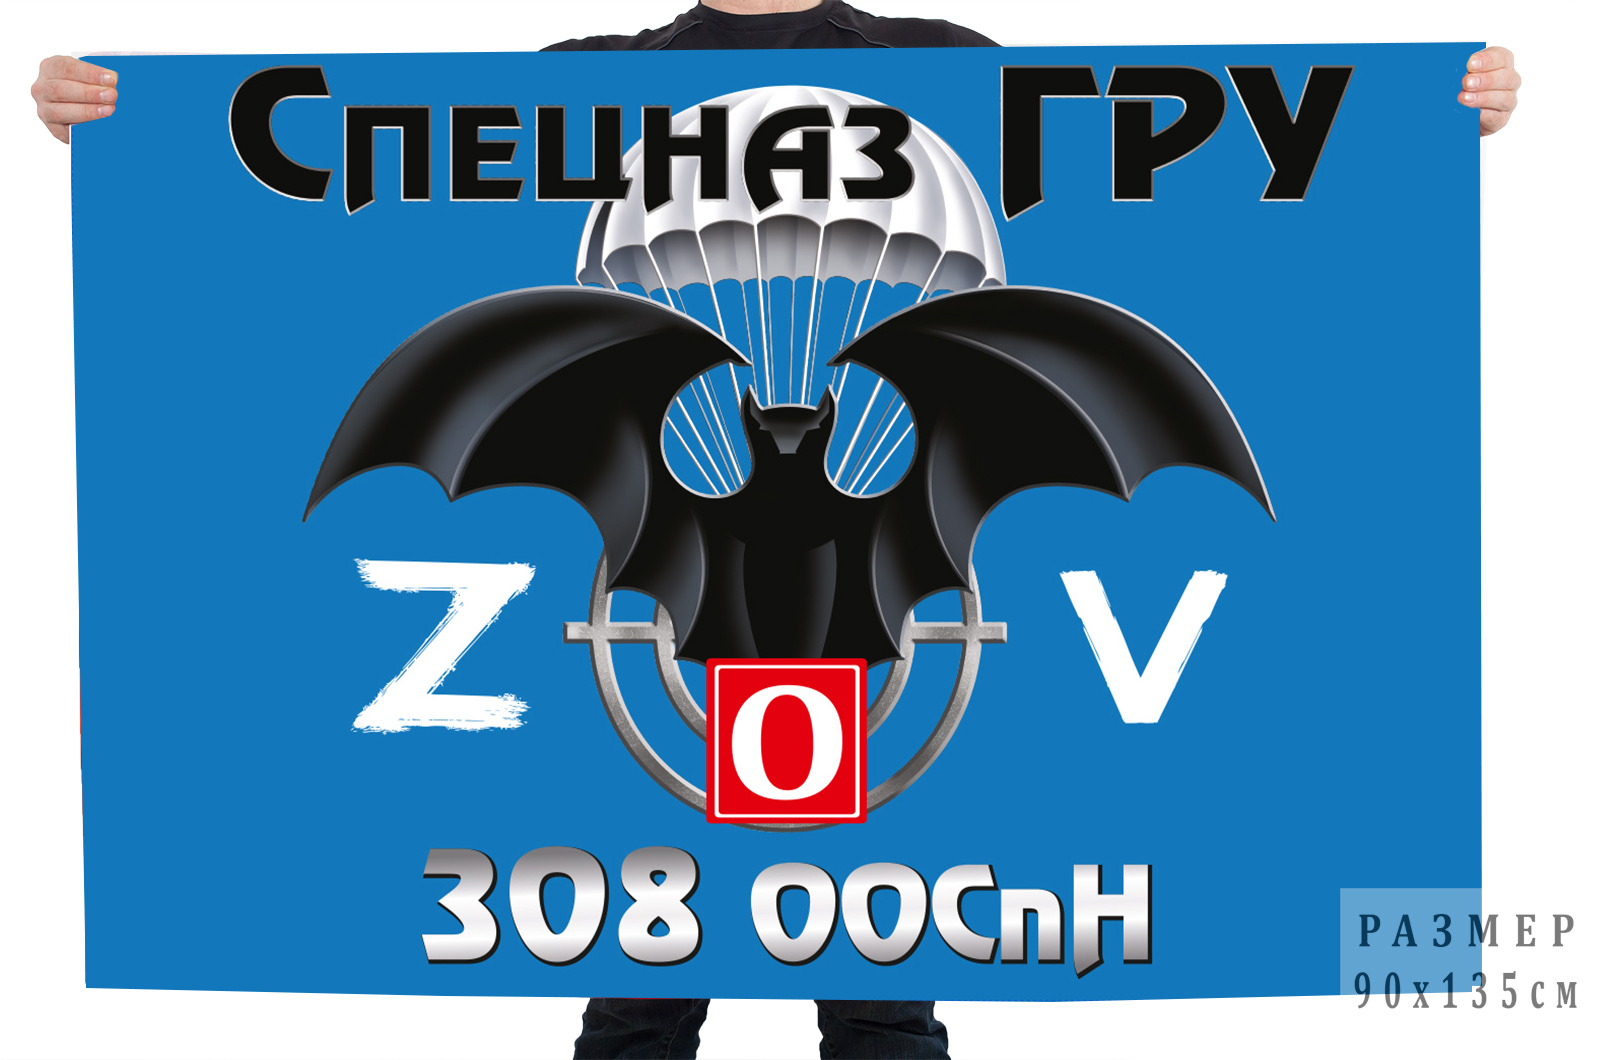 Флаг 308 ООСпН "Спецоперация Z"